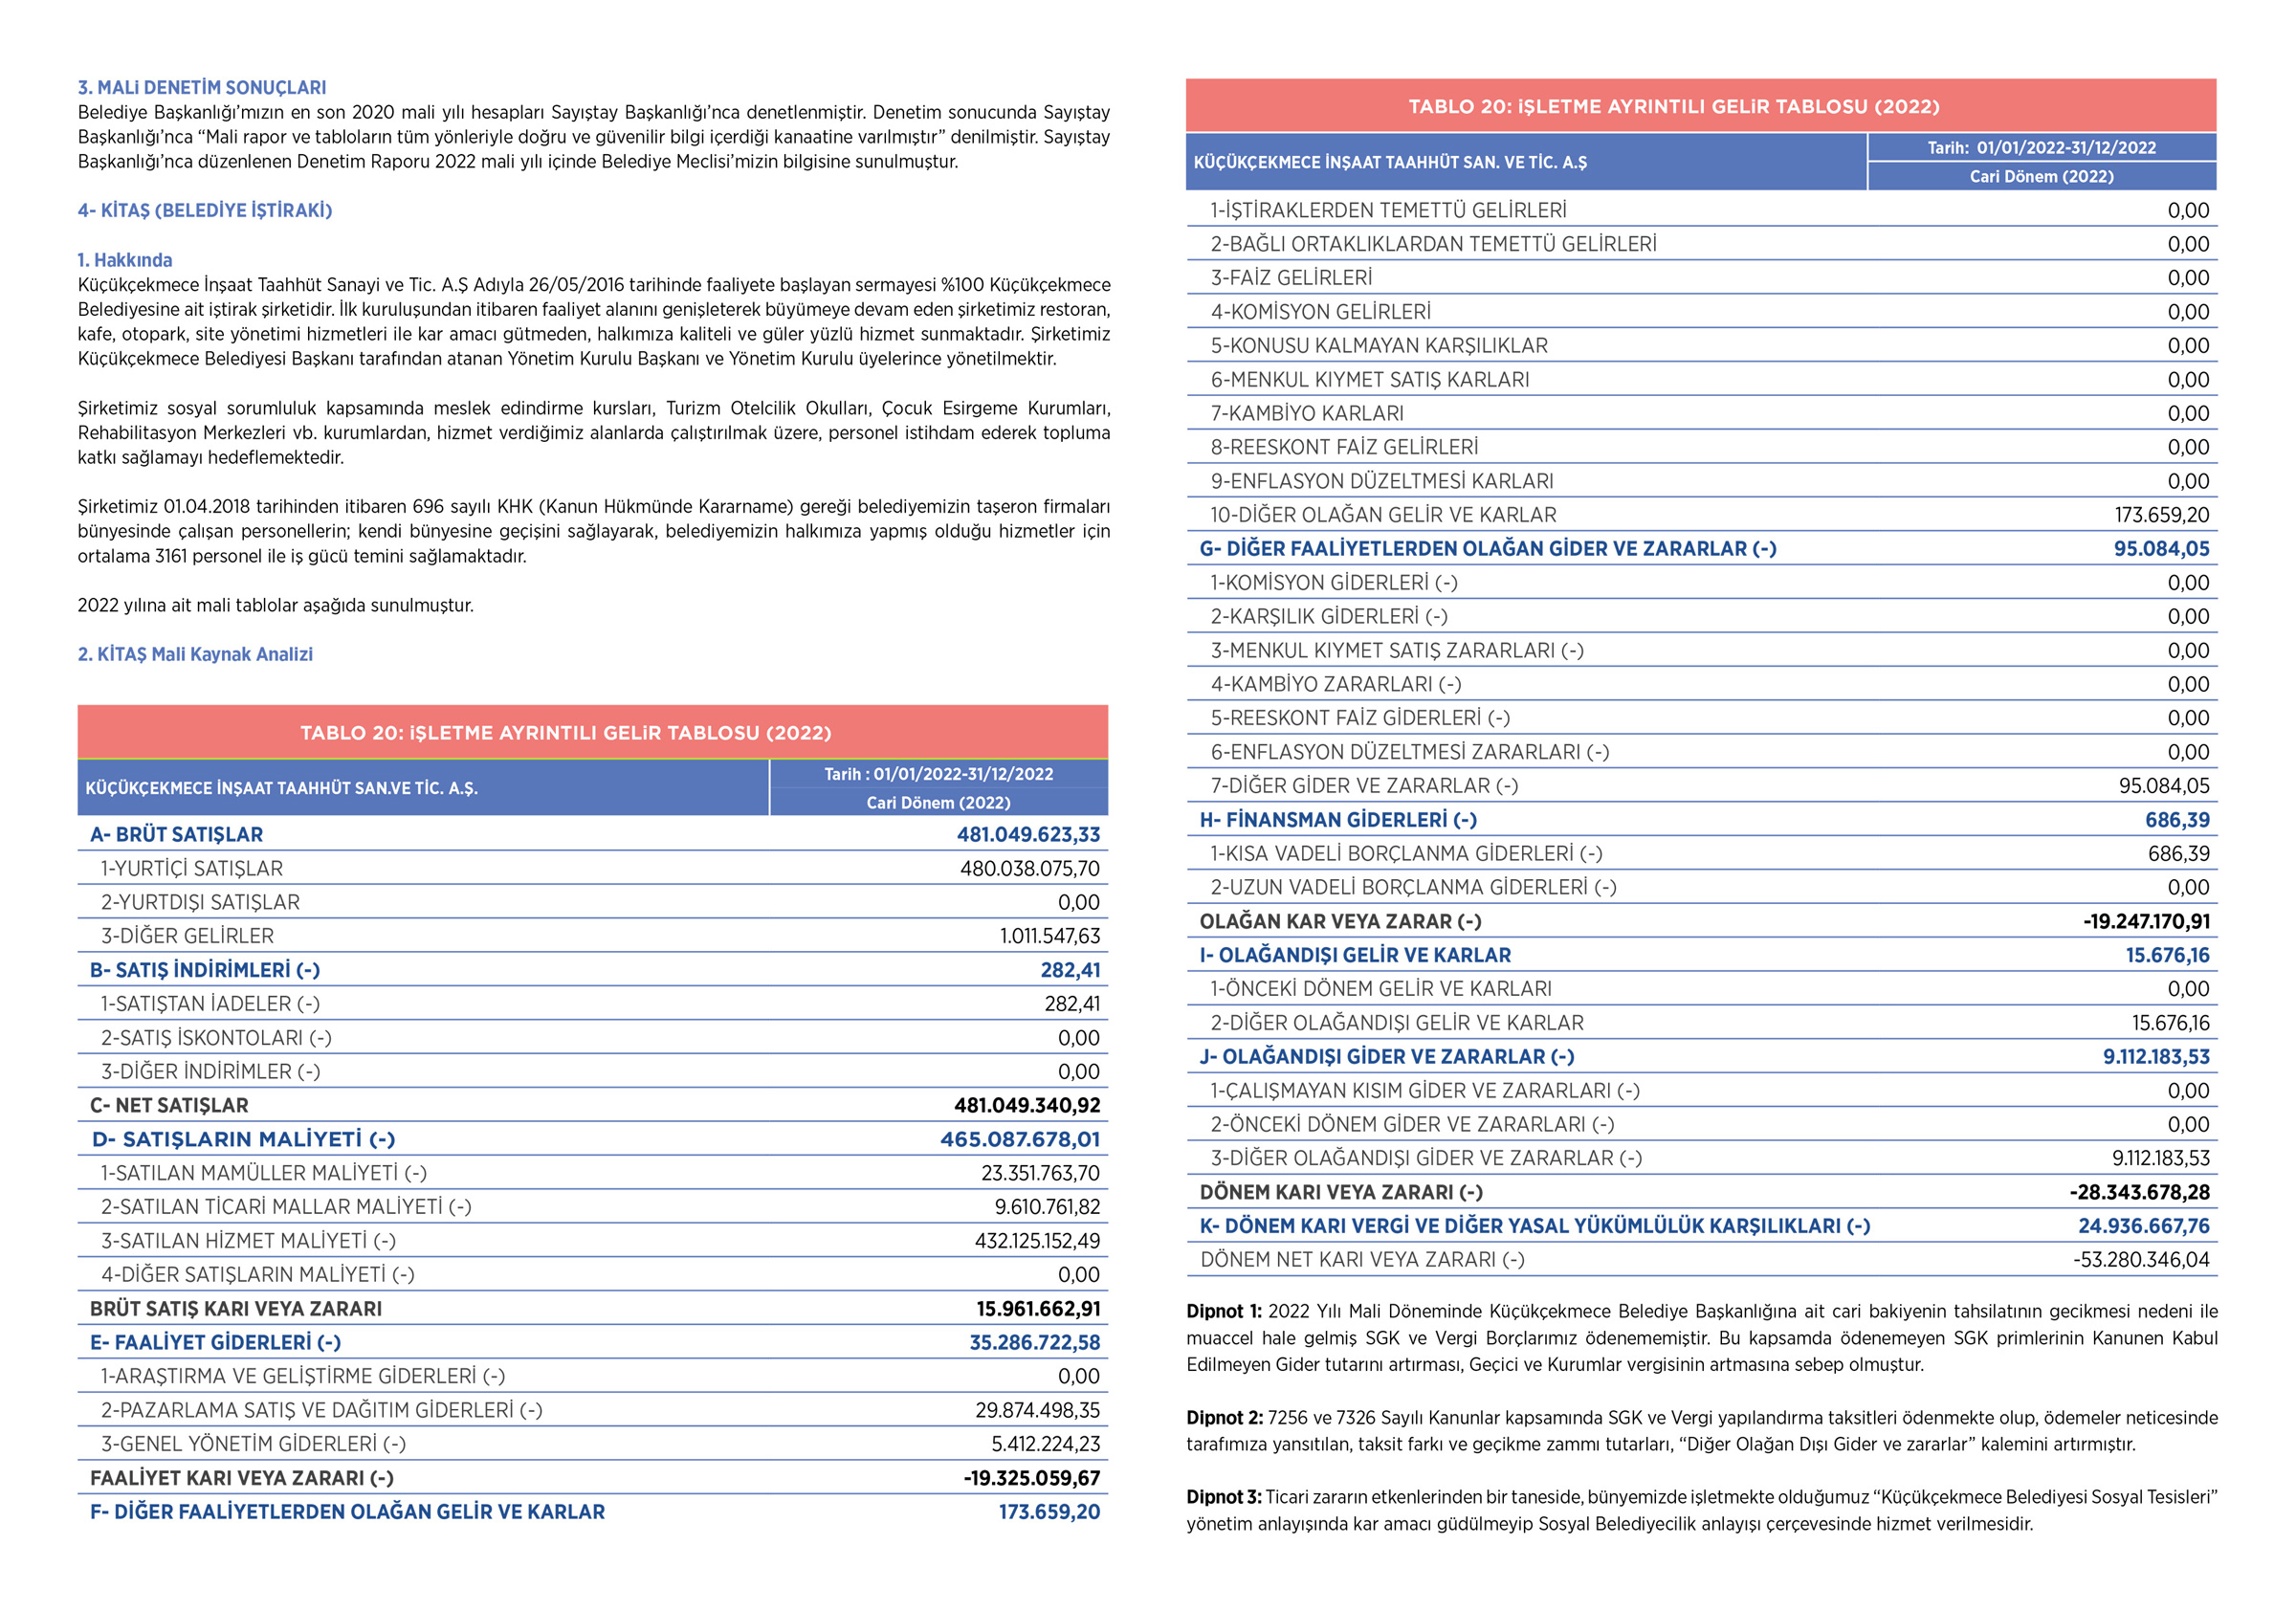 Küçükçekmece Belediyesi 2022 Faaliyet Raporu, sayfa 54–55